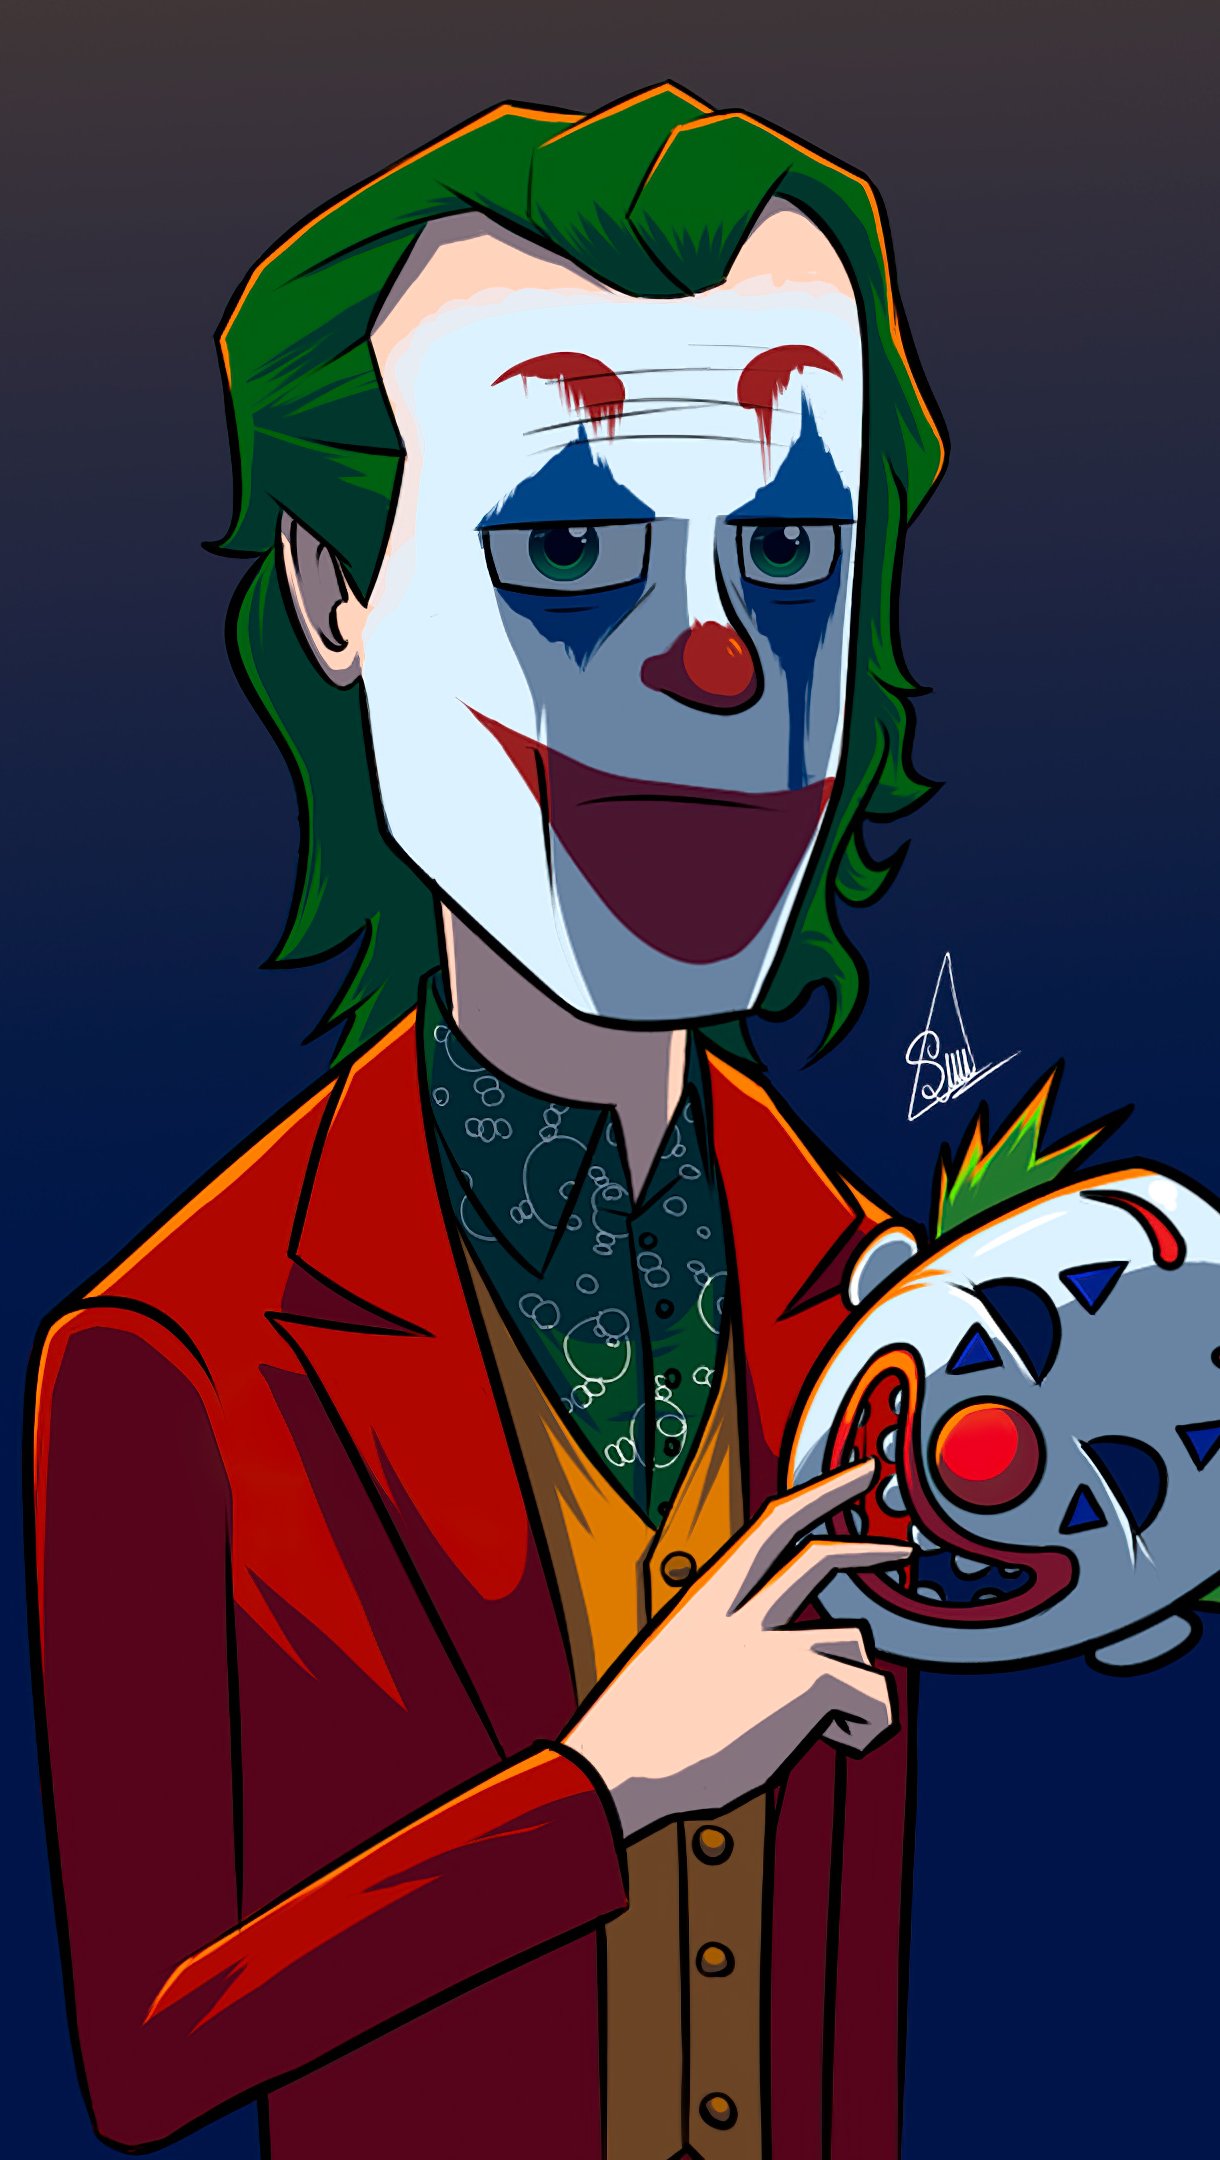 Wallpaper The Joker with clown mask Vertical